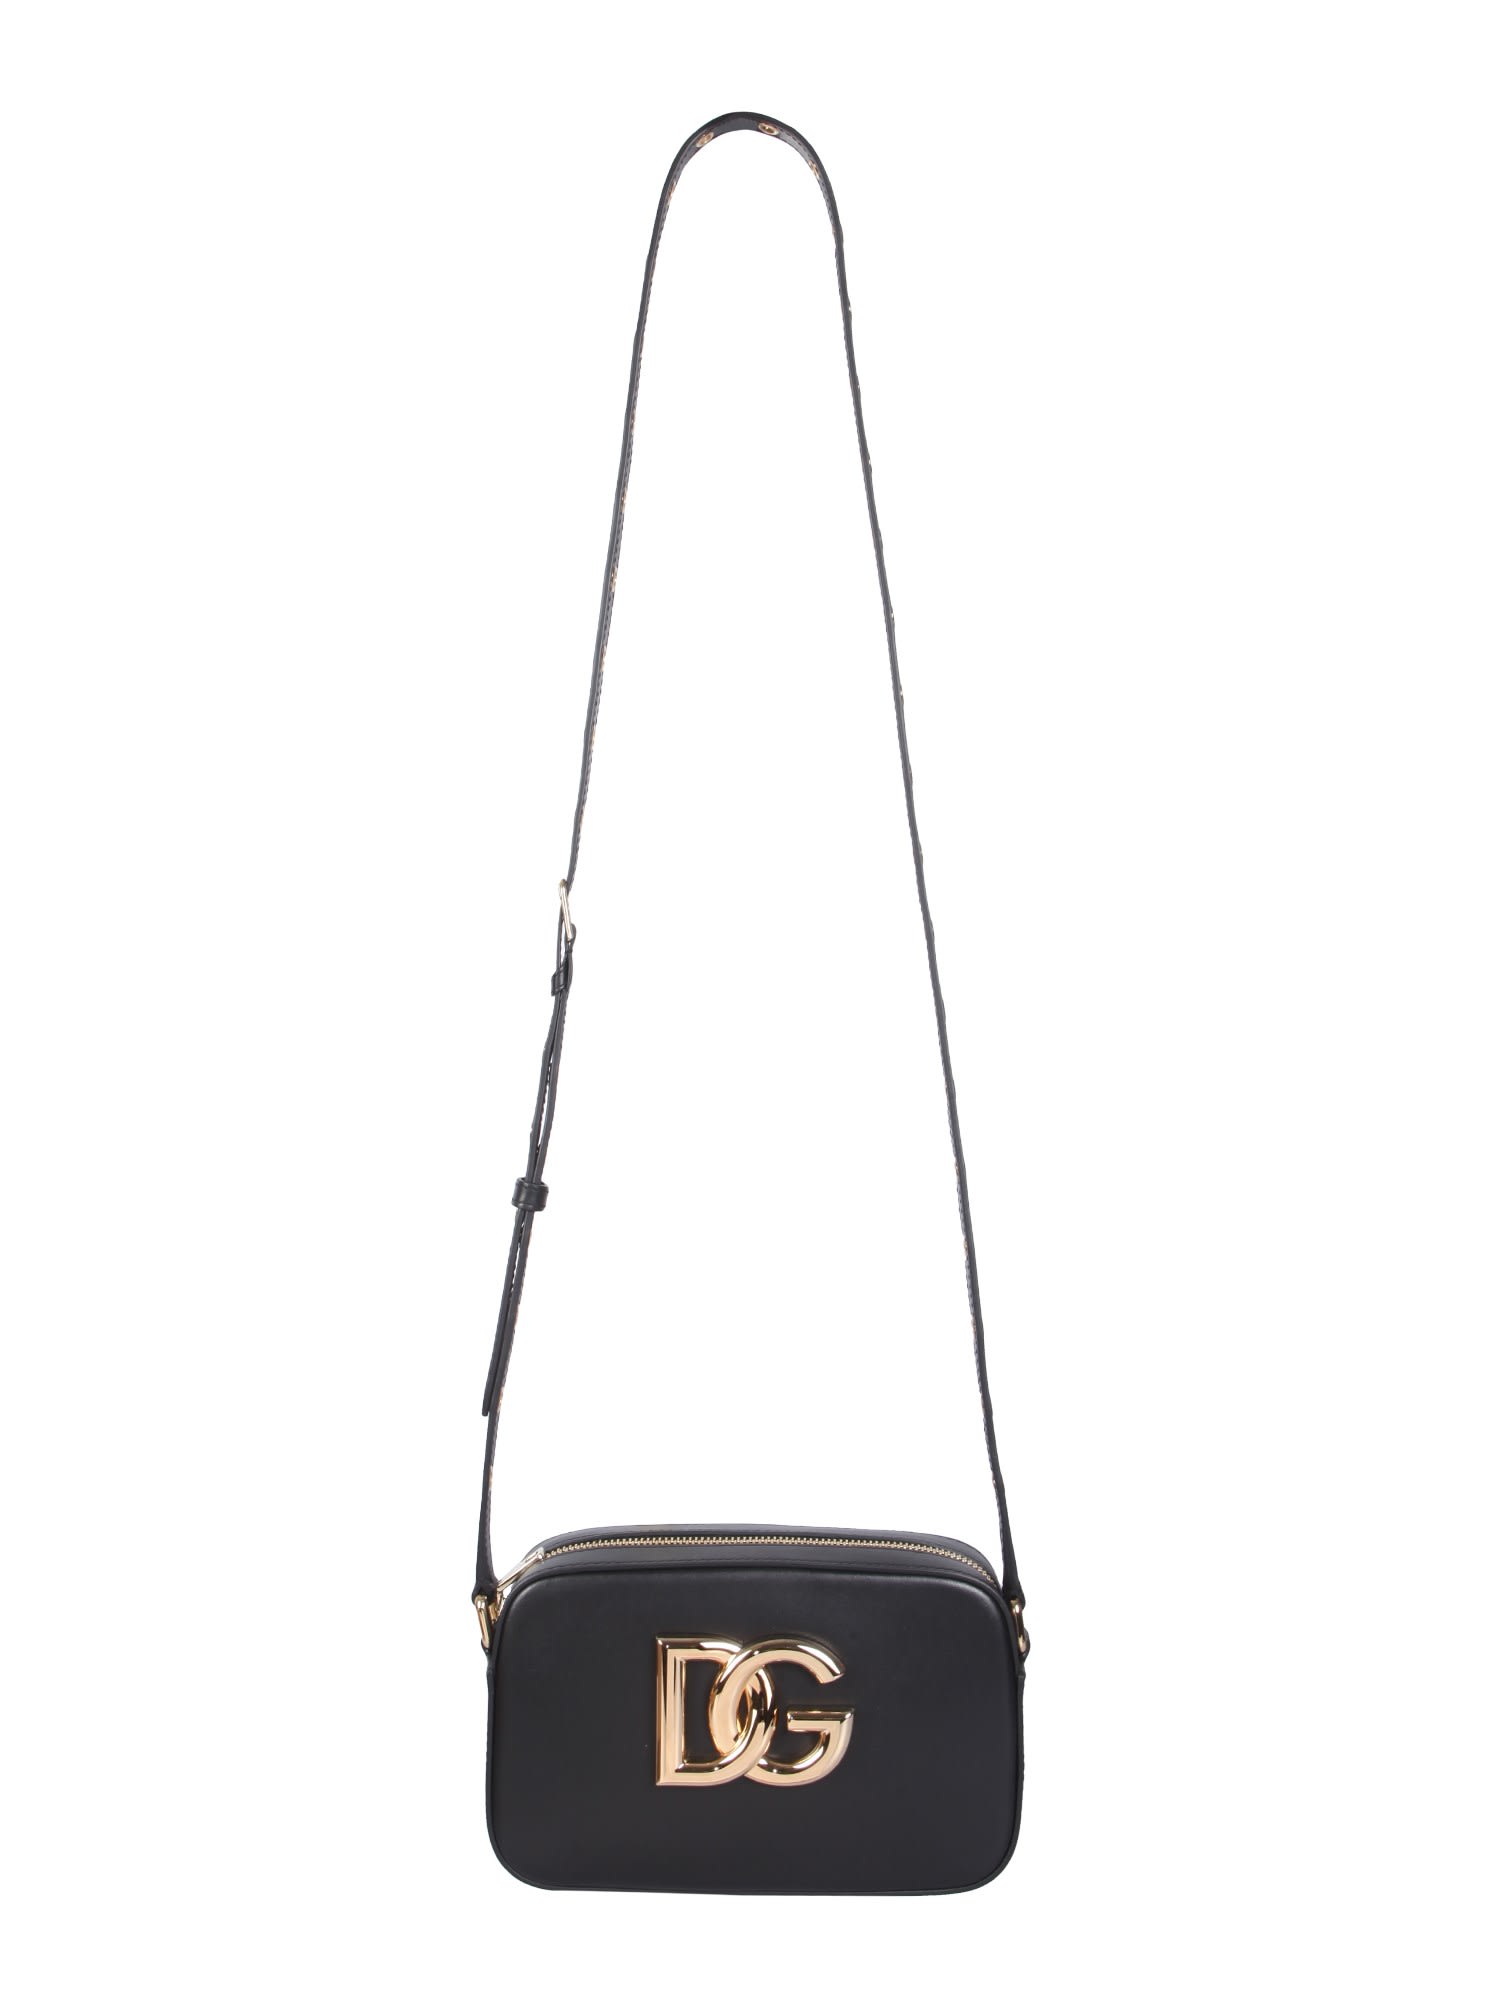 Dolce & Gabbana 3.5 Shoulder Bag